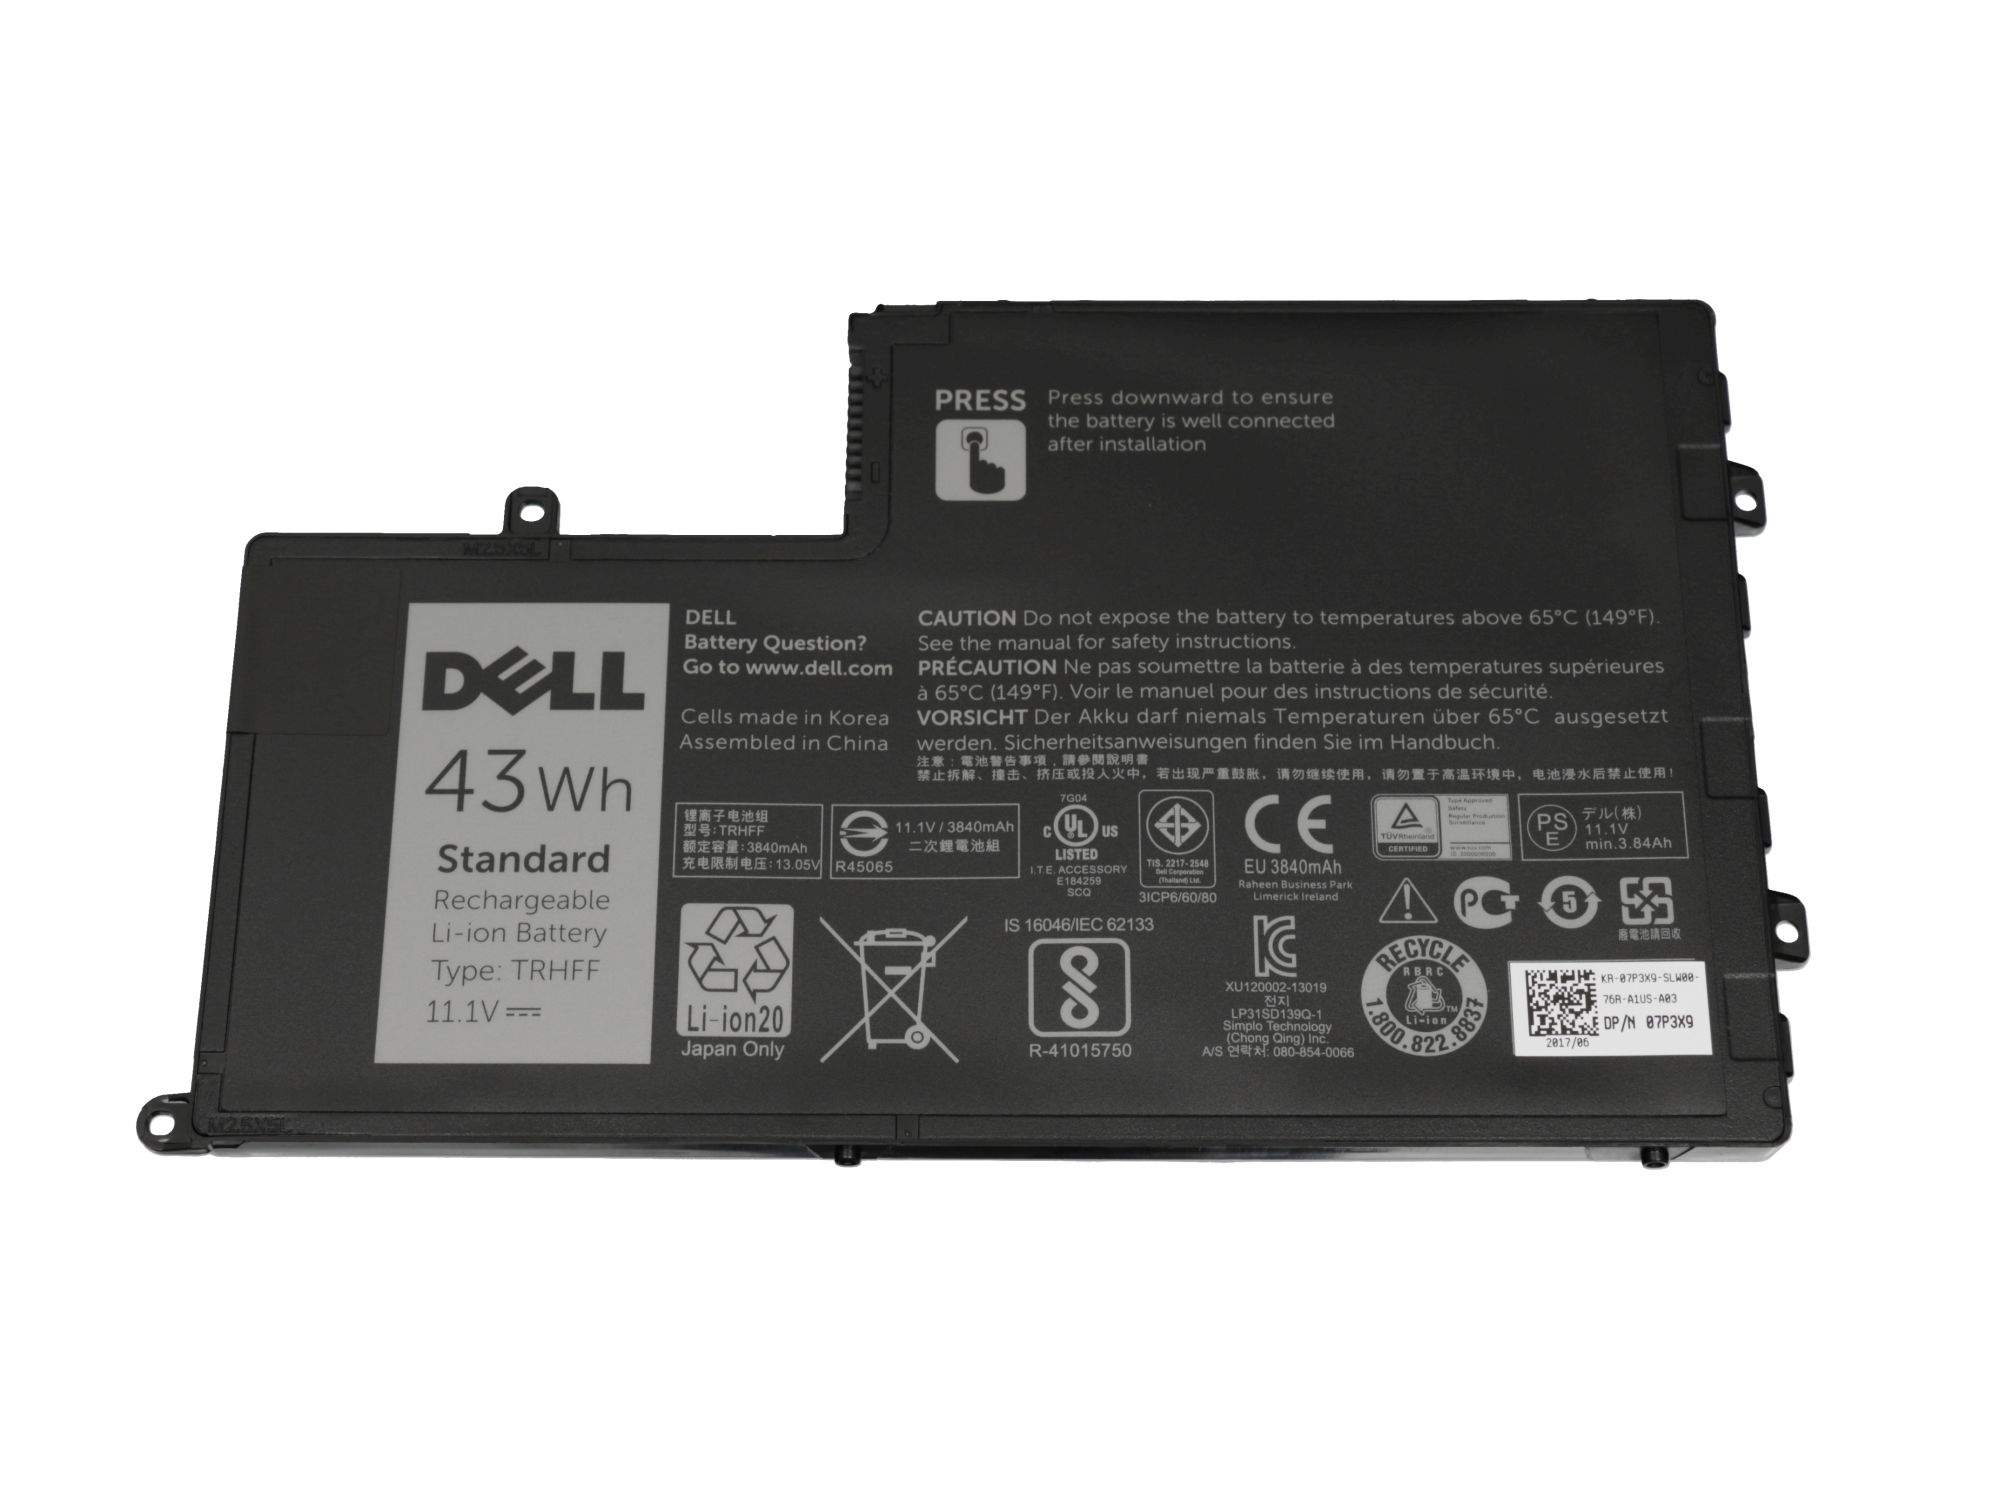 DELL Akku 43Wh Original für Dell Inspiron 5445 Serie